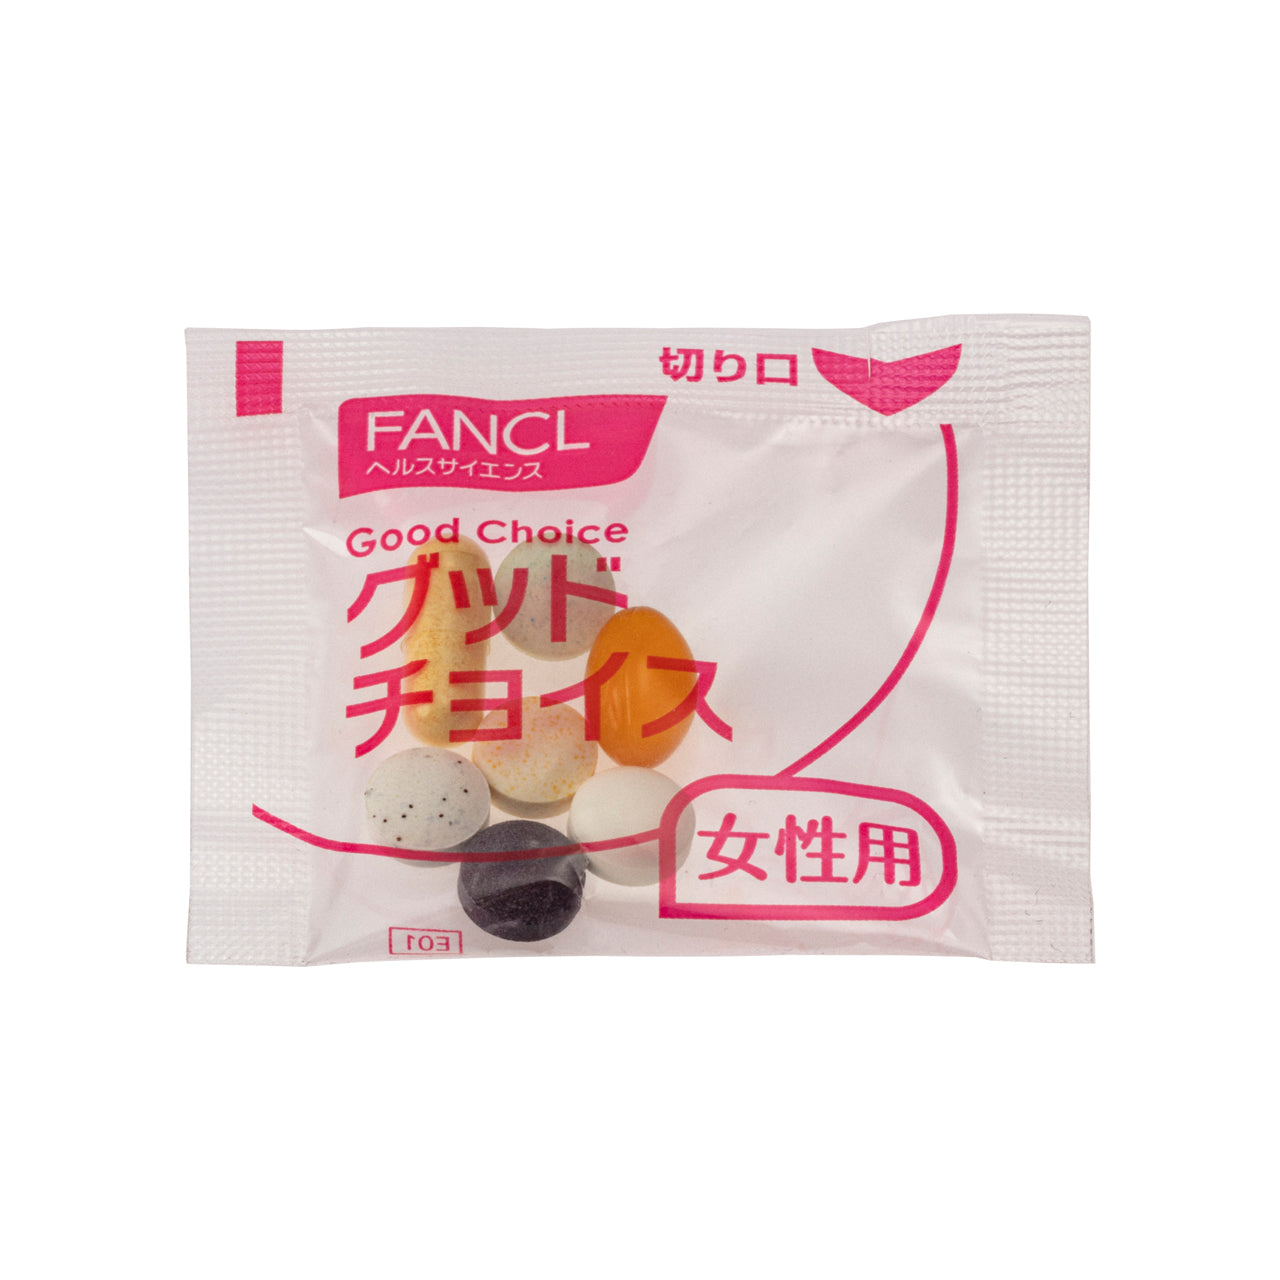 FANCL 30'S Women Supplement 30 Packs Fancl